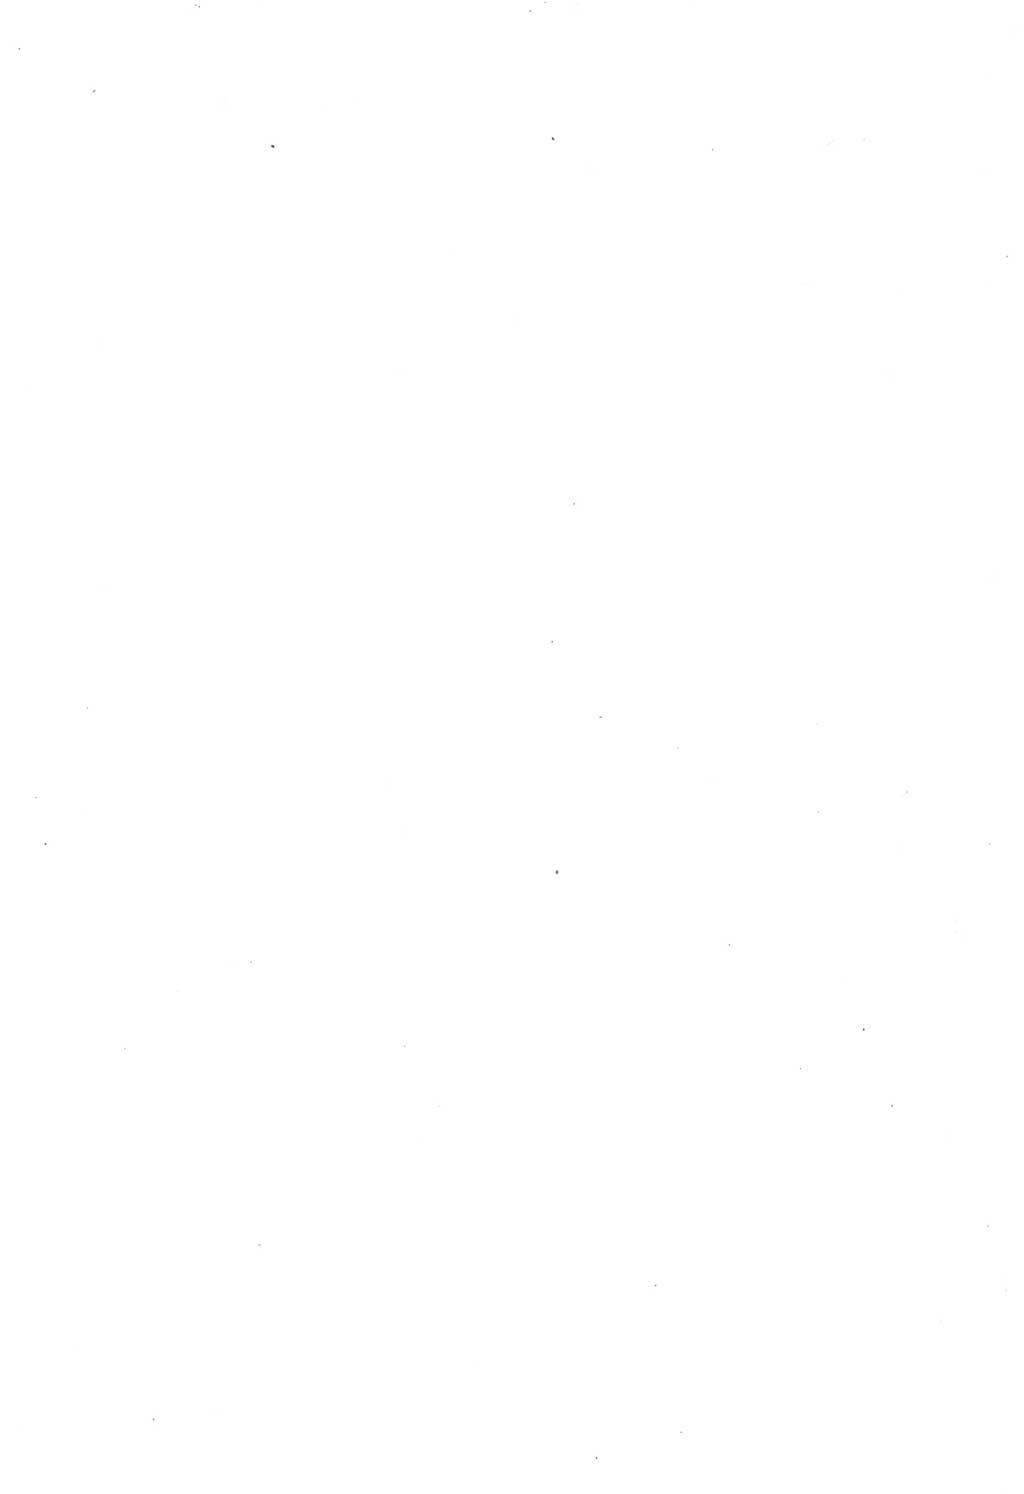 Protokoll der Verhandlungen des Ⅲ. Parteitages der Sozialistischen Einheitspartei Deutschlands (SED) [Deutsche Demokratische Republik (DDR)] 1950, Band 2, Seite 2 (Prot. Verh. Ⅲ. PT SED DDR 1950, Bd. 2, S. 2)